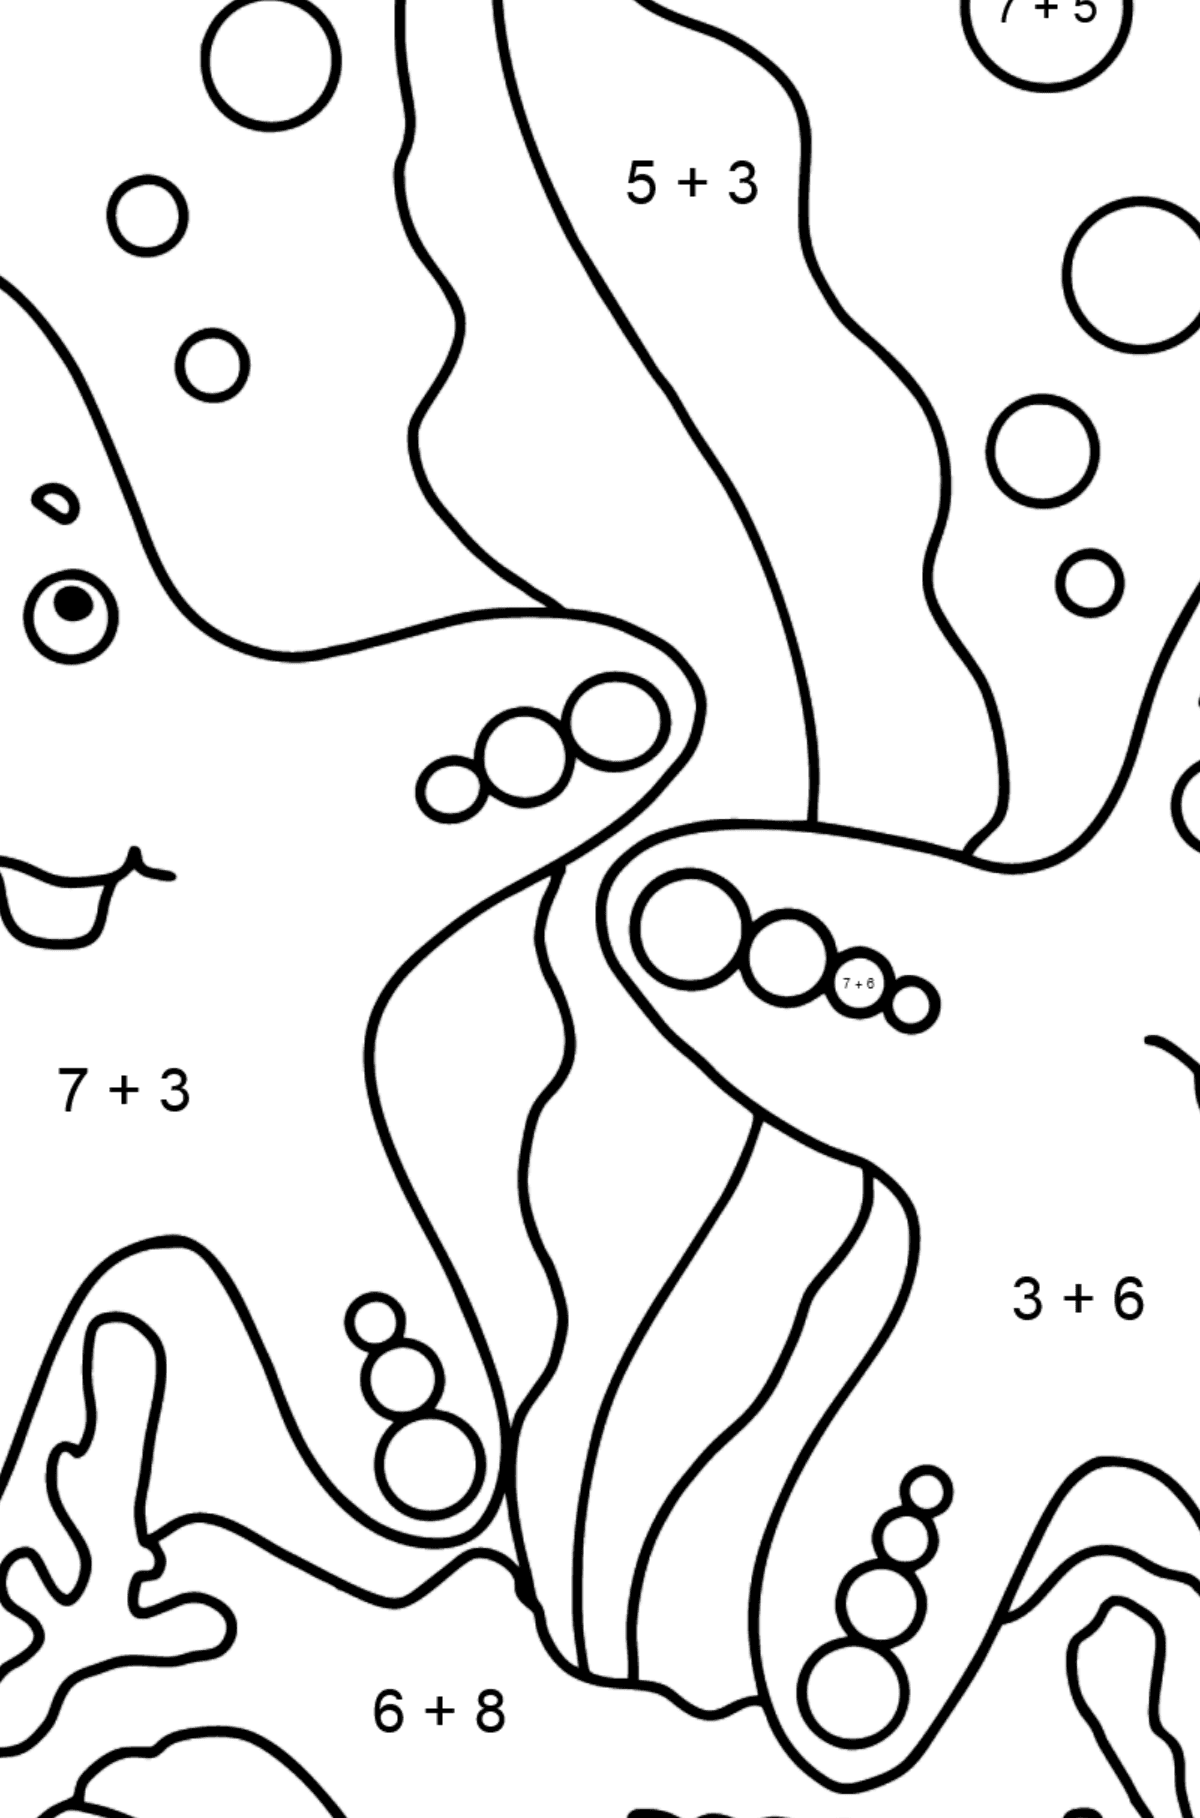 Dibujo para colorear Dos estrellas de mar (fácil) - Colorear con Matemáticas - Sumas para Niños